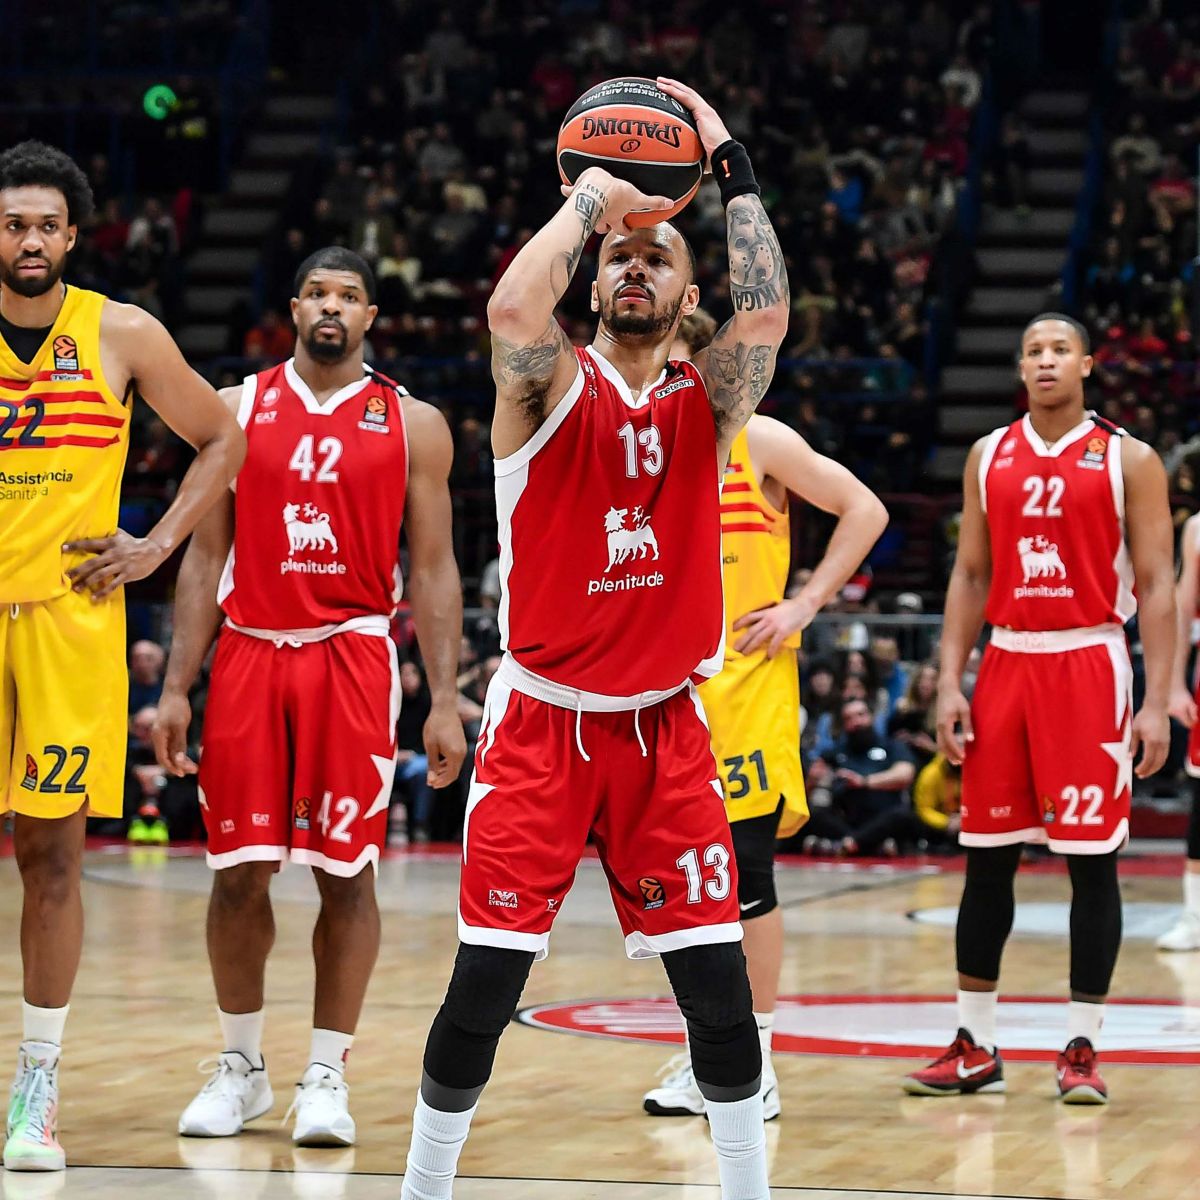 In un campo da basket professionale ci sono tre giocatori vestiti di rosso con il logo Plenitude sulla maglia e due giocatori vestiti di giallo, quello con la divisa rossa sta lanciando la palla verso l'alto.